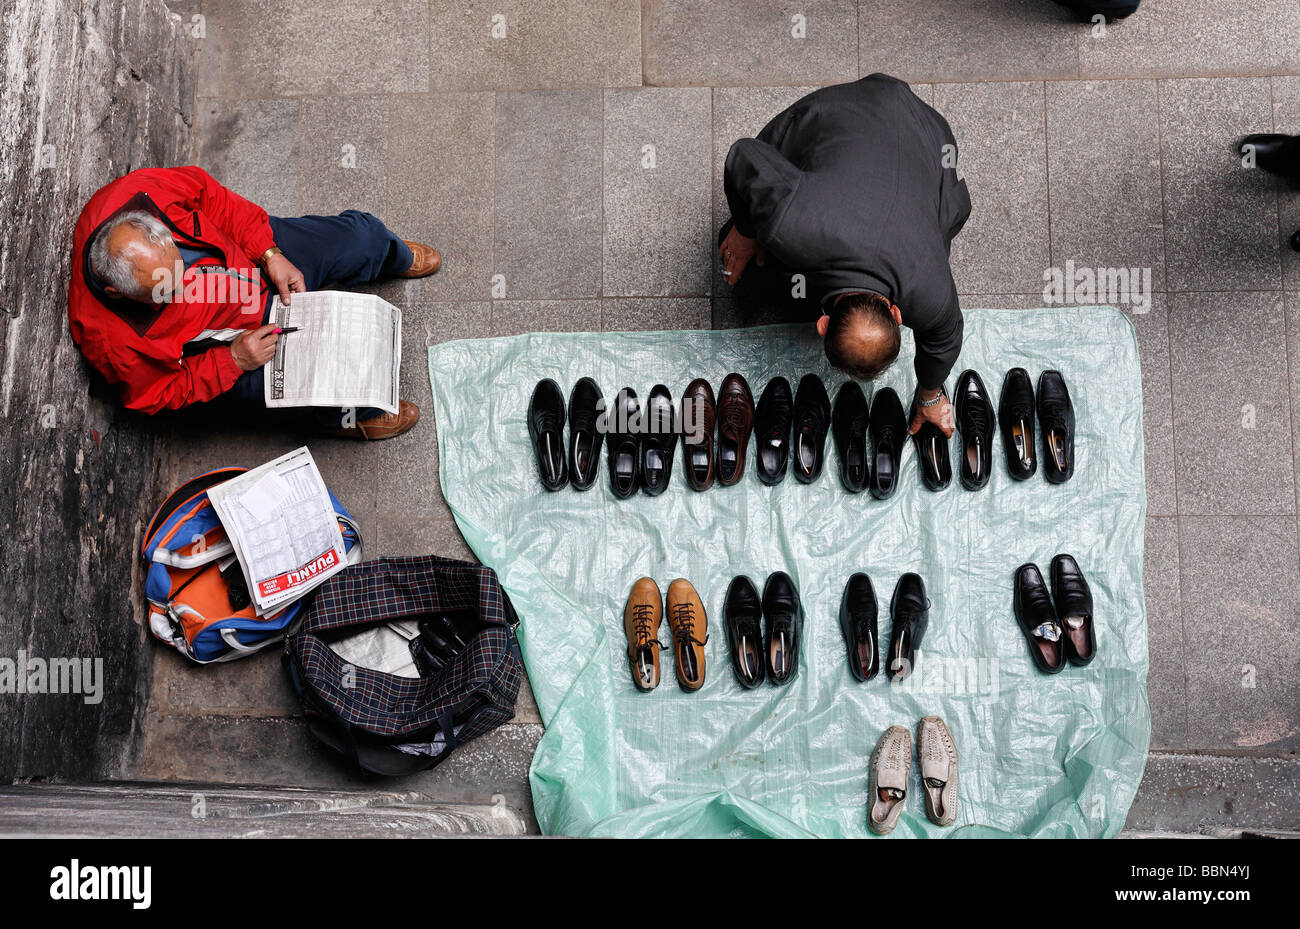 Mann vende zapatos usados en la calle, un cliente alcanza para un zapato, vista desde arriba, Estambul, Turquía Foto de stock